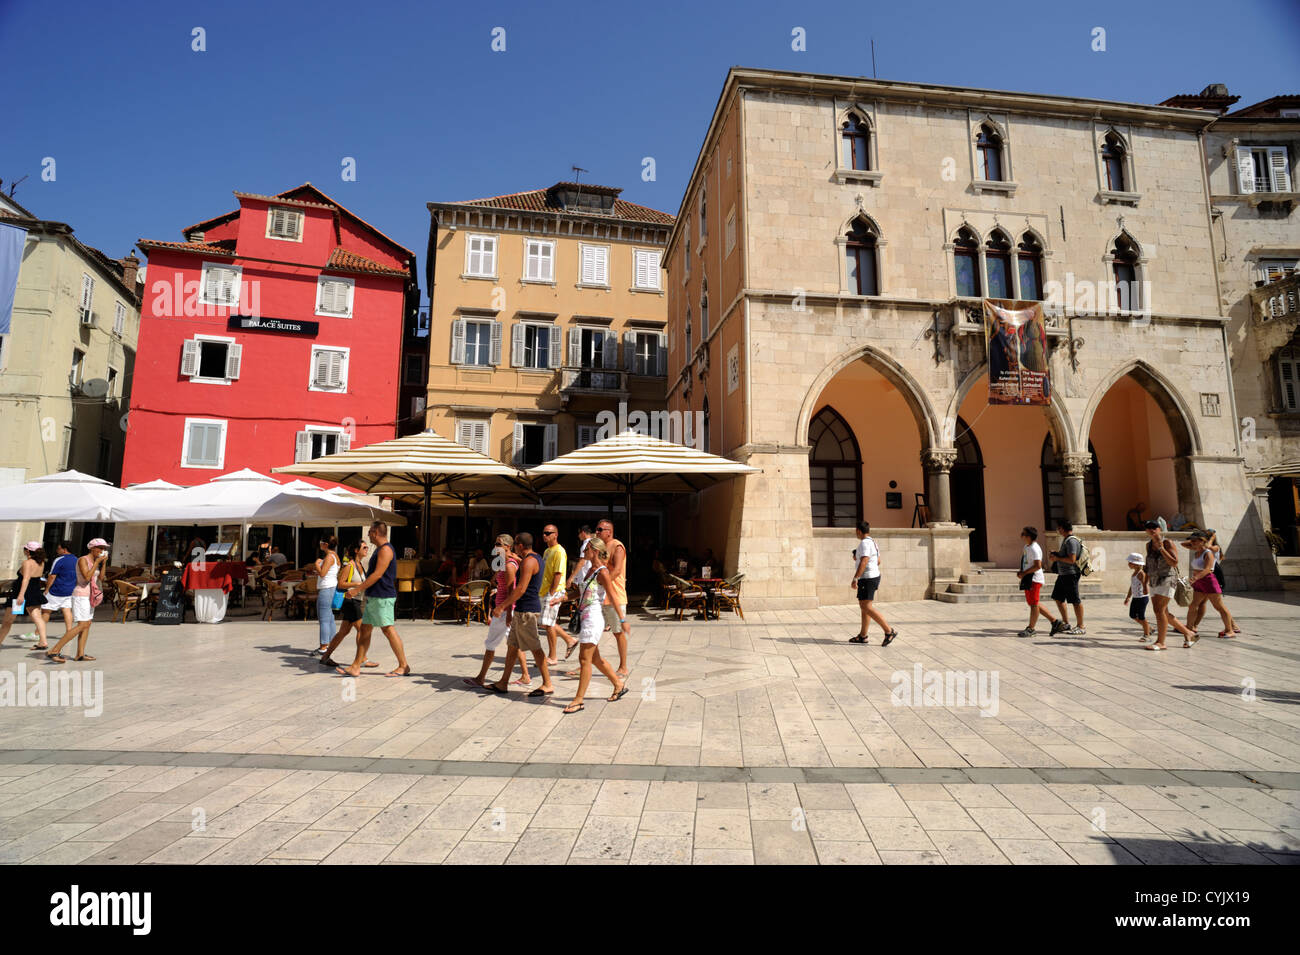 Croazia, Spalato, Narodni Trg, piazza del vecchio municipio Foto Stock